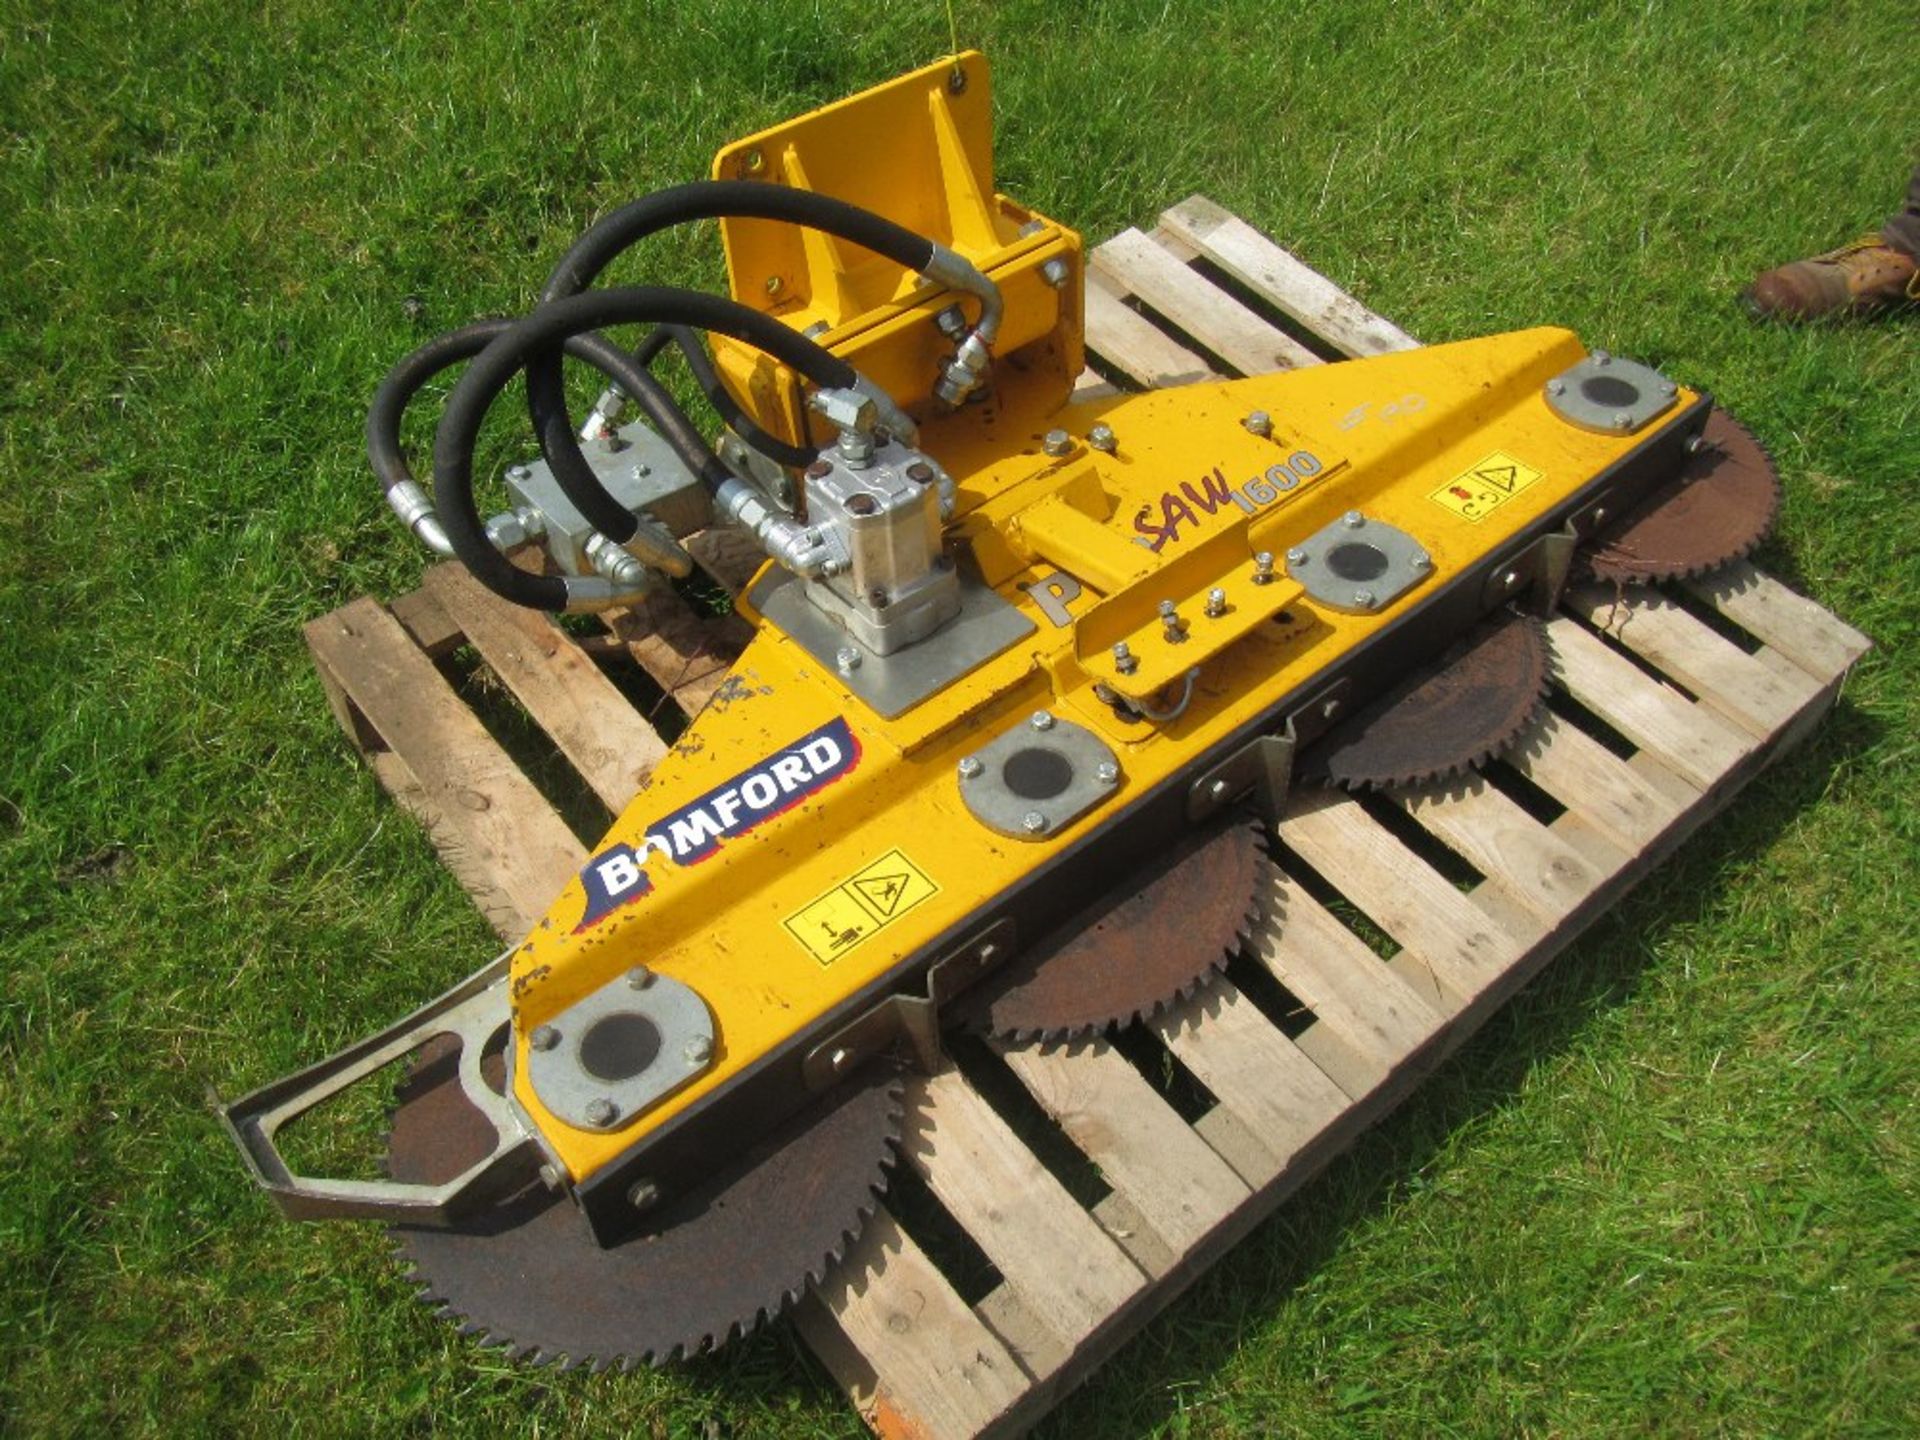 Bamford 1600 hydraulic saw